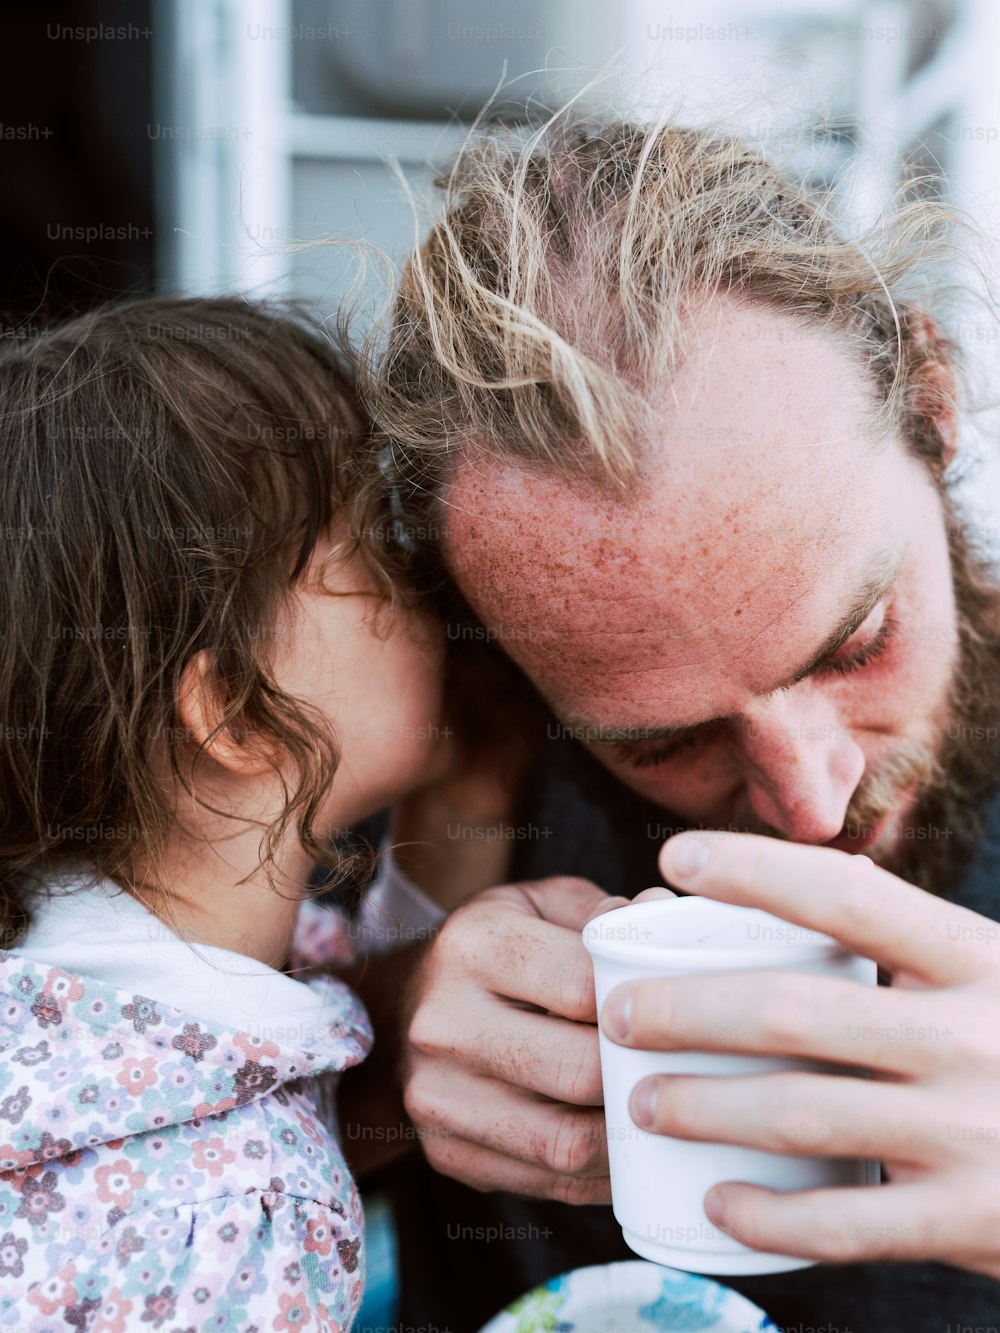 Un homme et une petite fille buvant dans une tasse